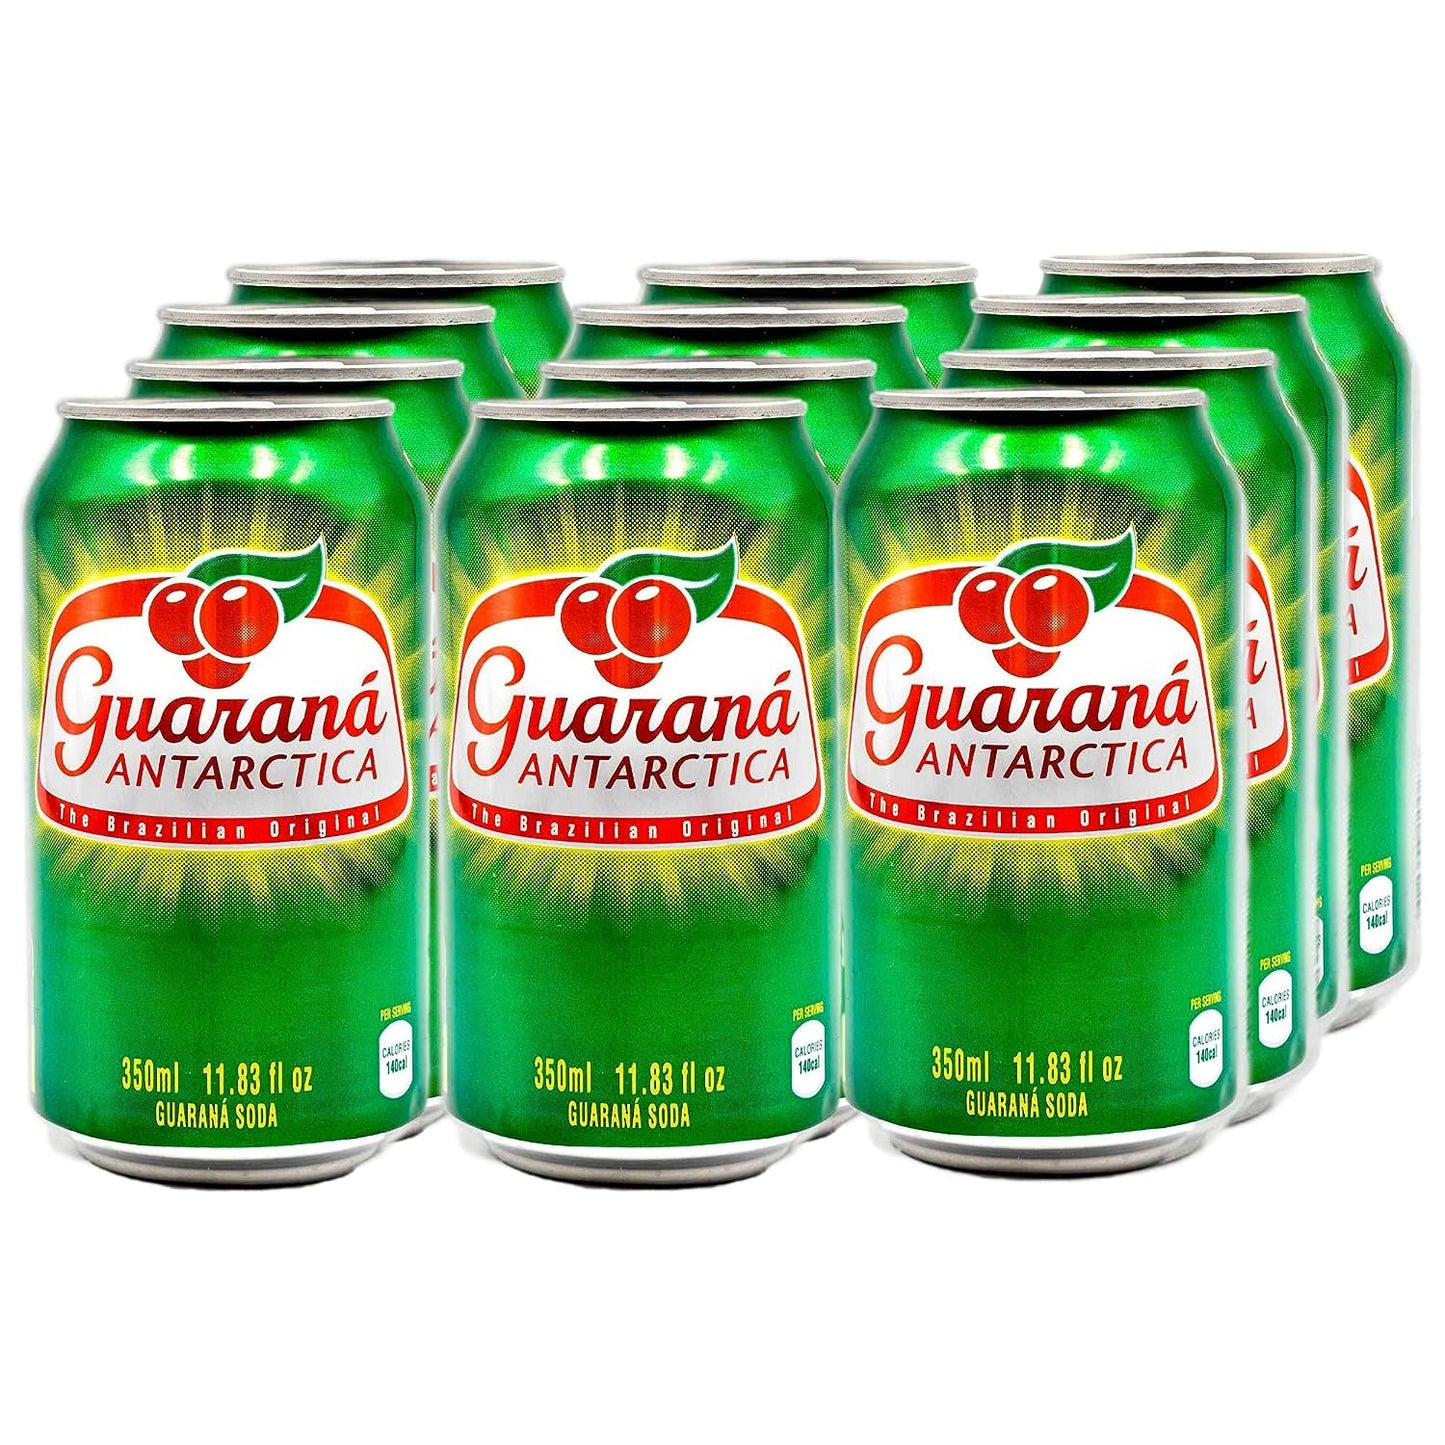 Guarana Antarctica Soda, Original (Brazil)